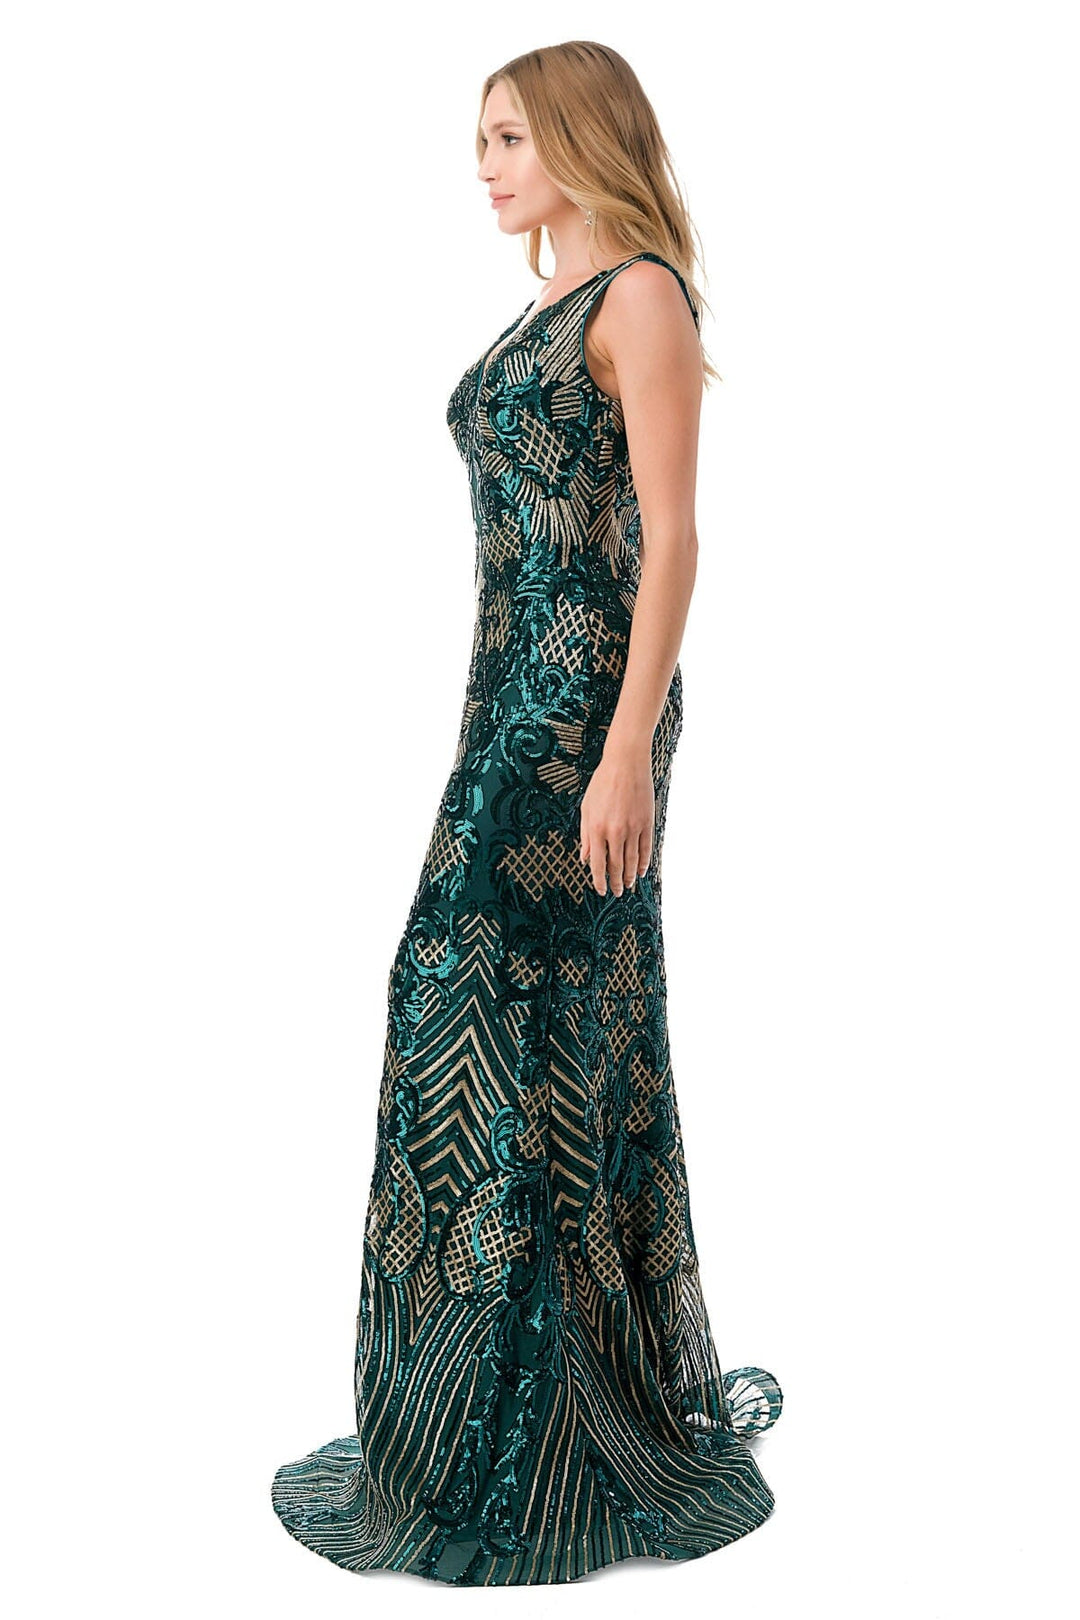 Sequin Print Sleeveless Mermaid Dress by Coya M2803Y